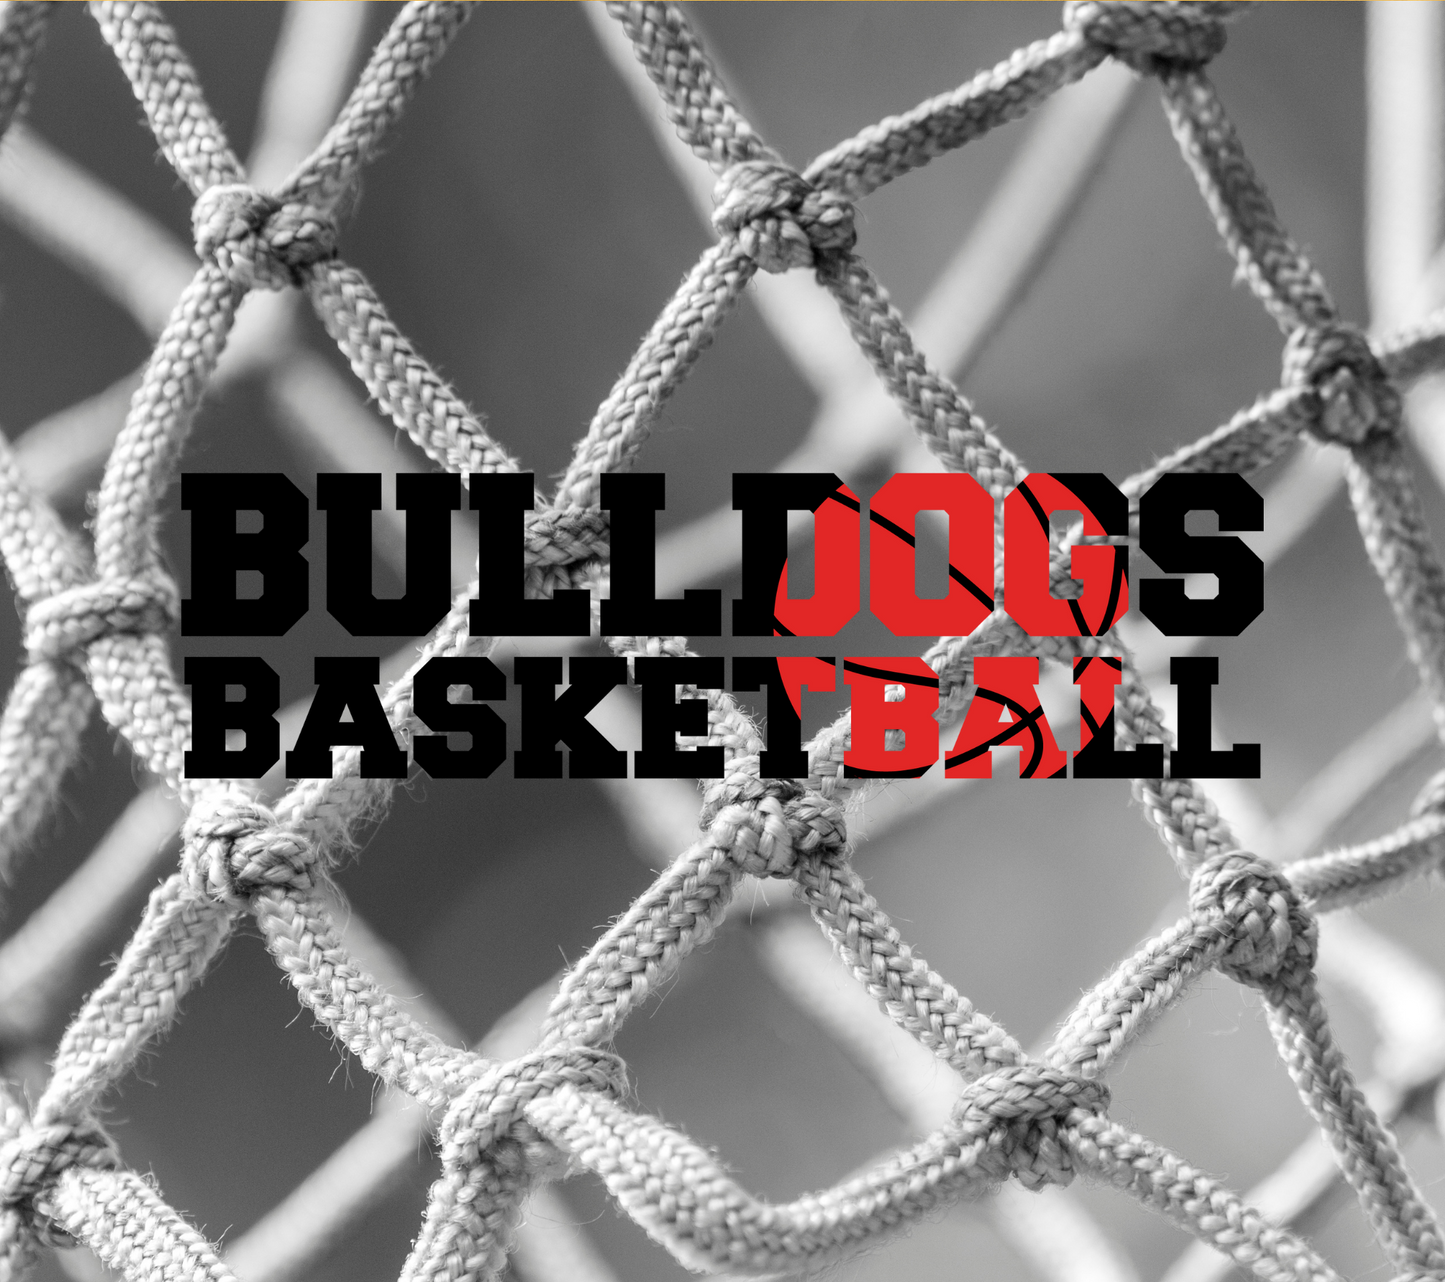 Bulldog basketball w/ net